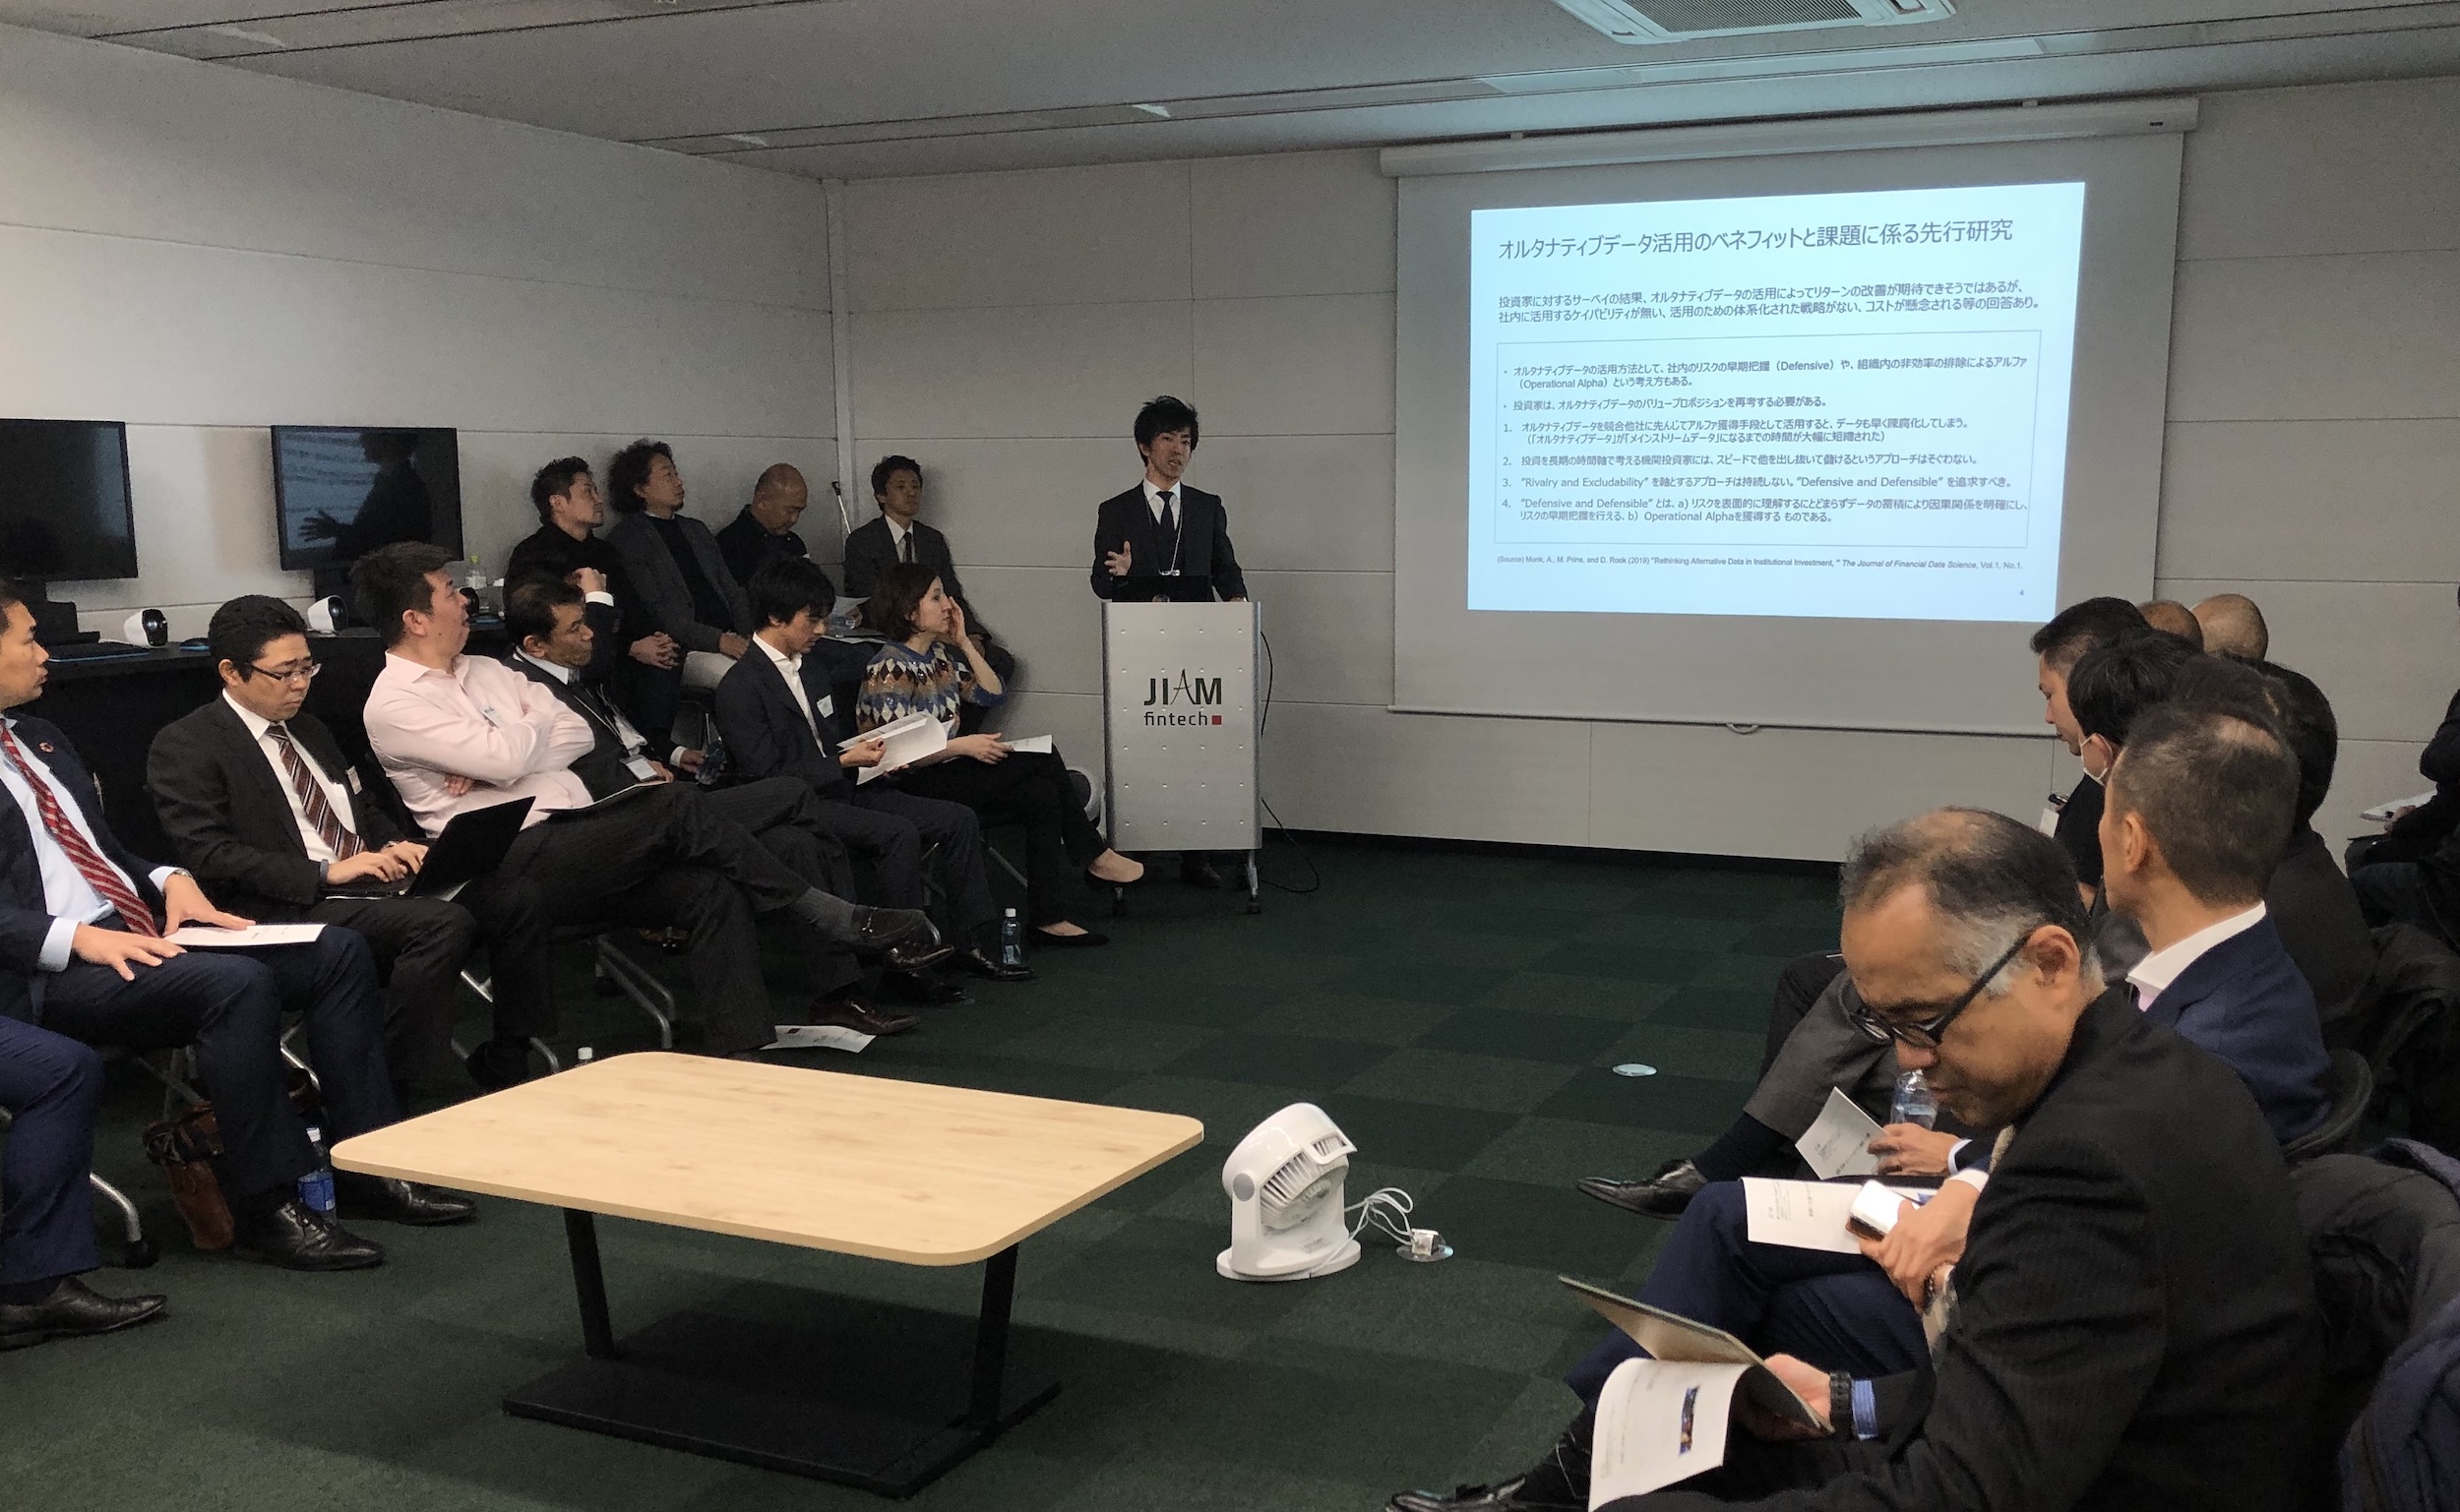 Ryuichi Murasawa's presentation